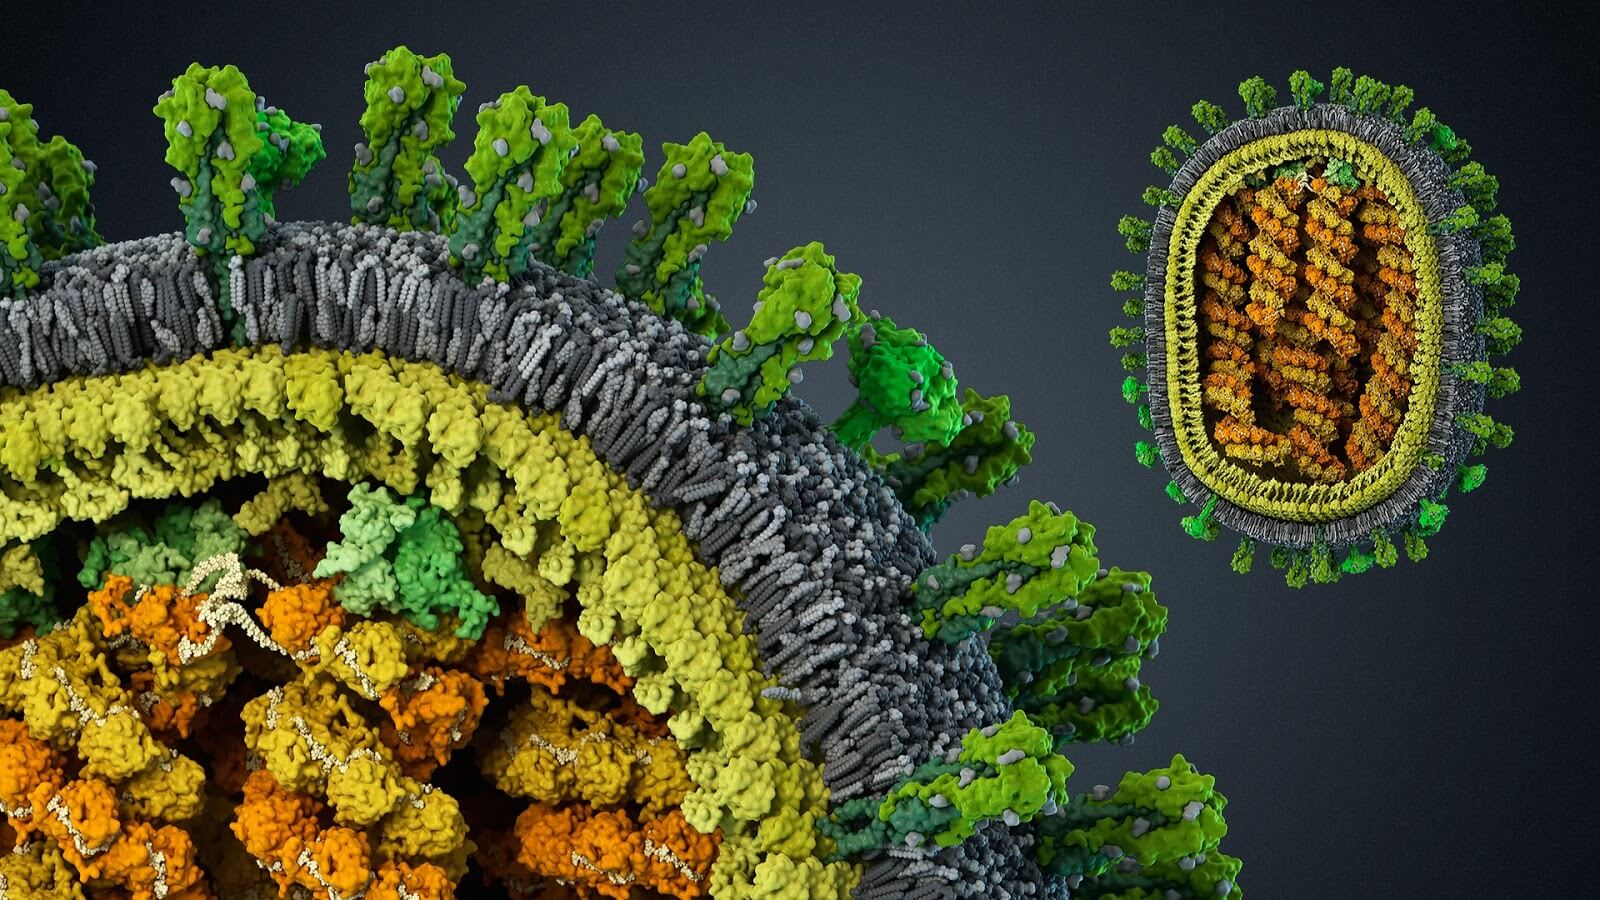 Evrim hastalık: hikaye virüs ile başa çıkmak